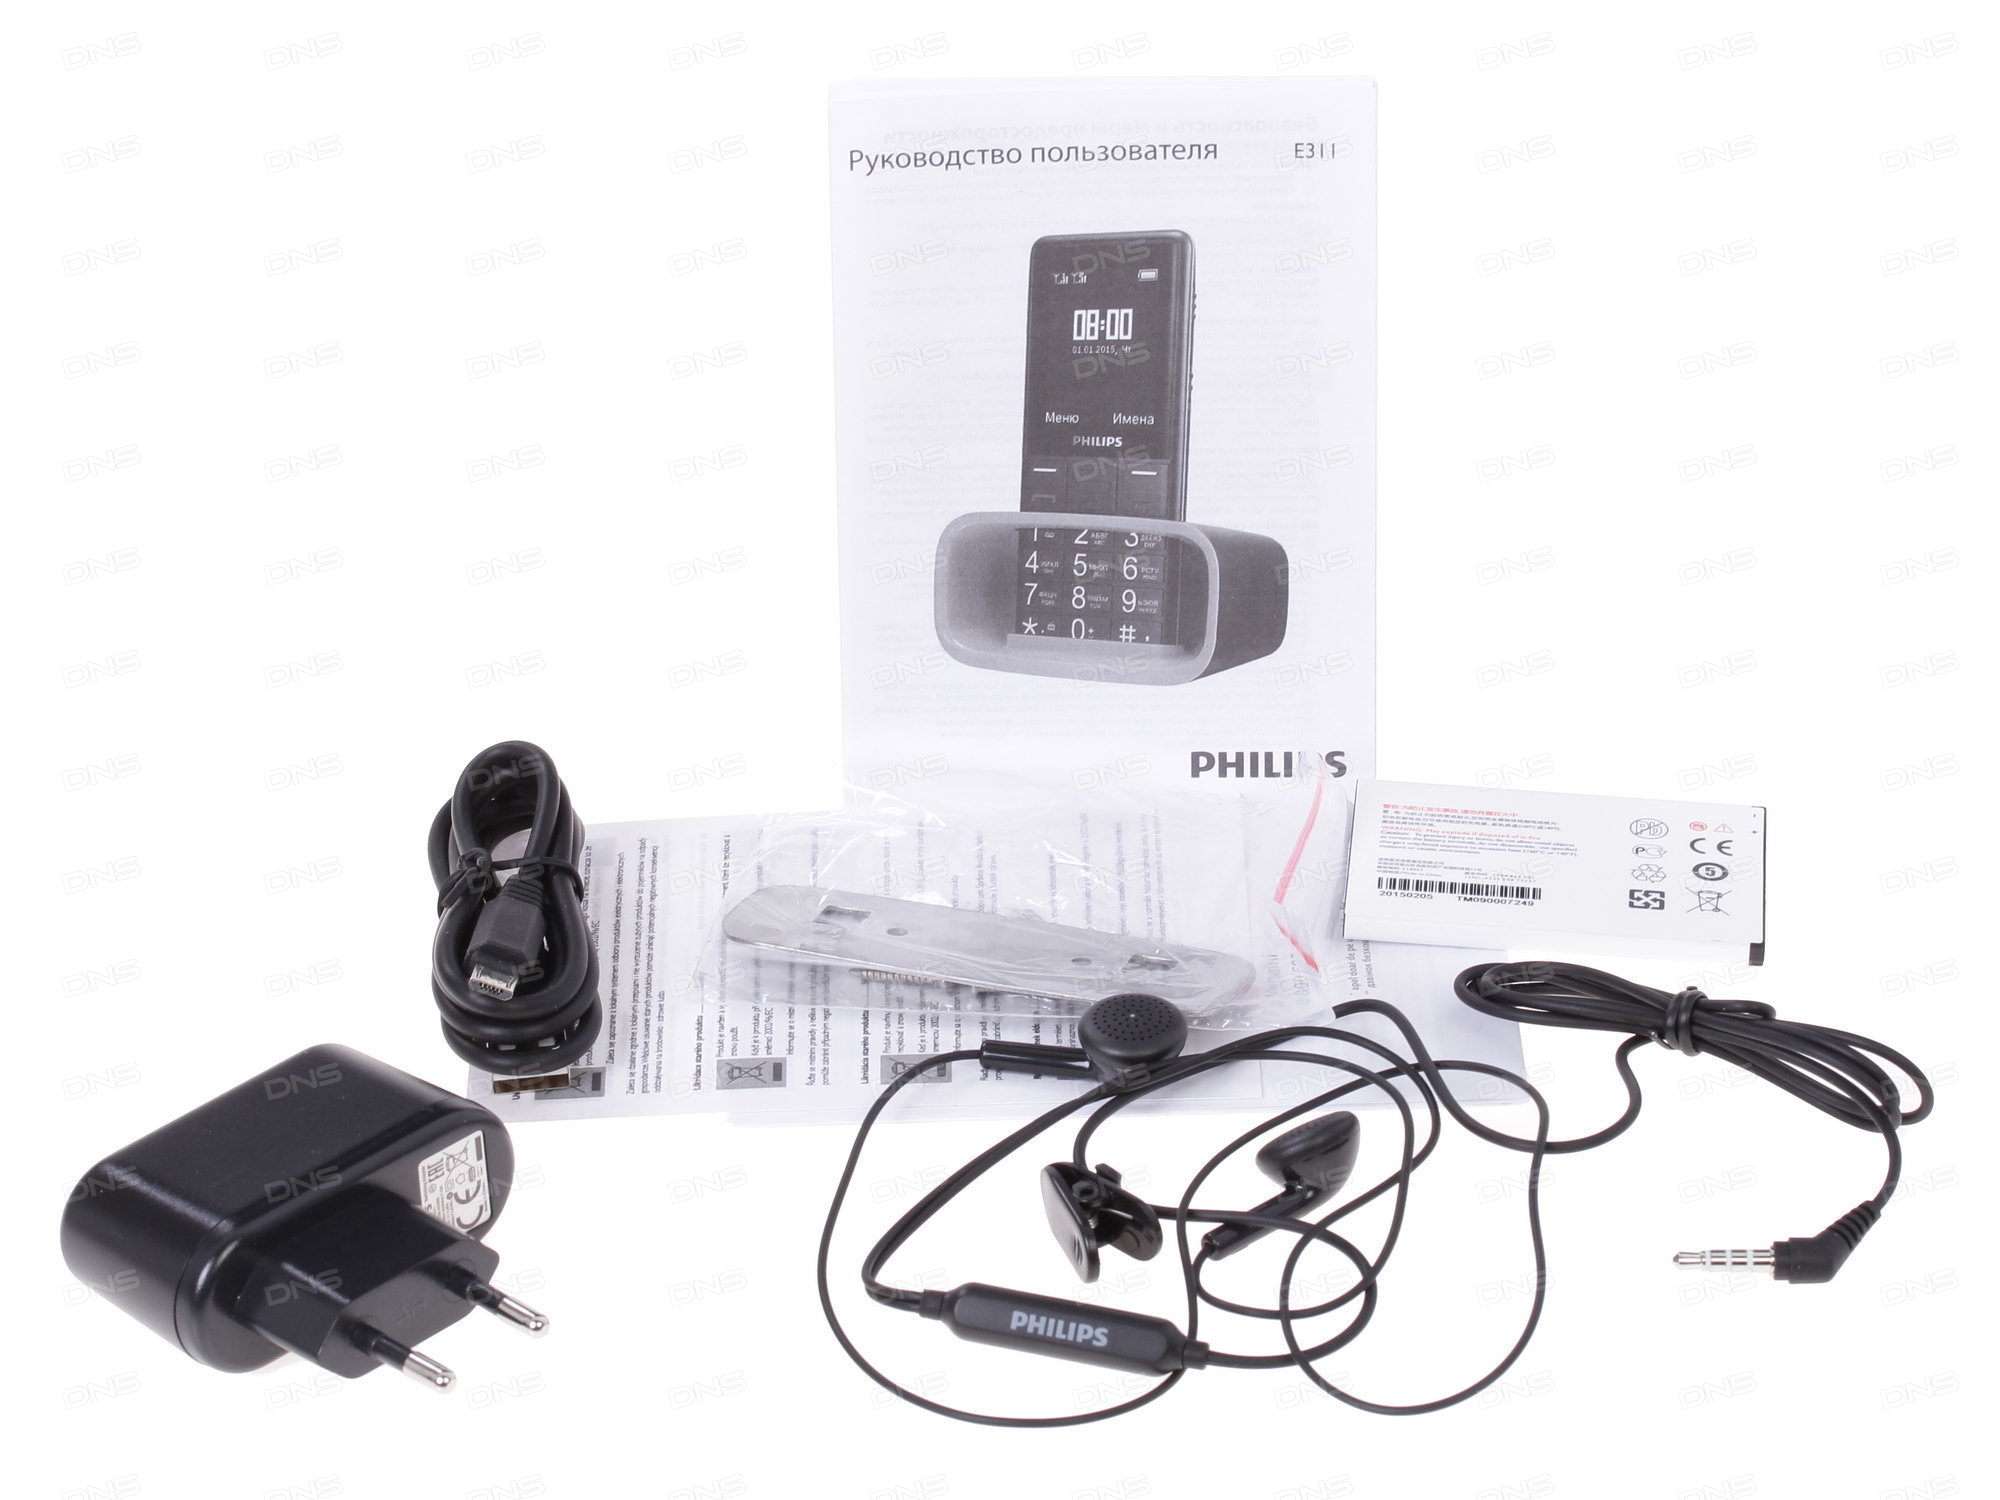 Мобільний телефон Philips Xenium e311: переваги, недоліки та характеристики «бабушкофона»